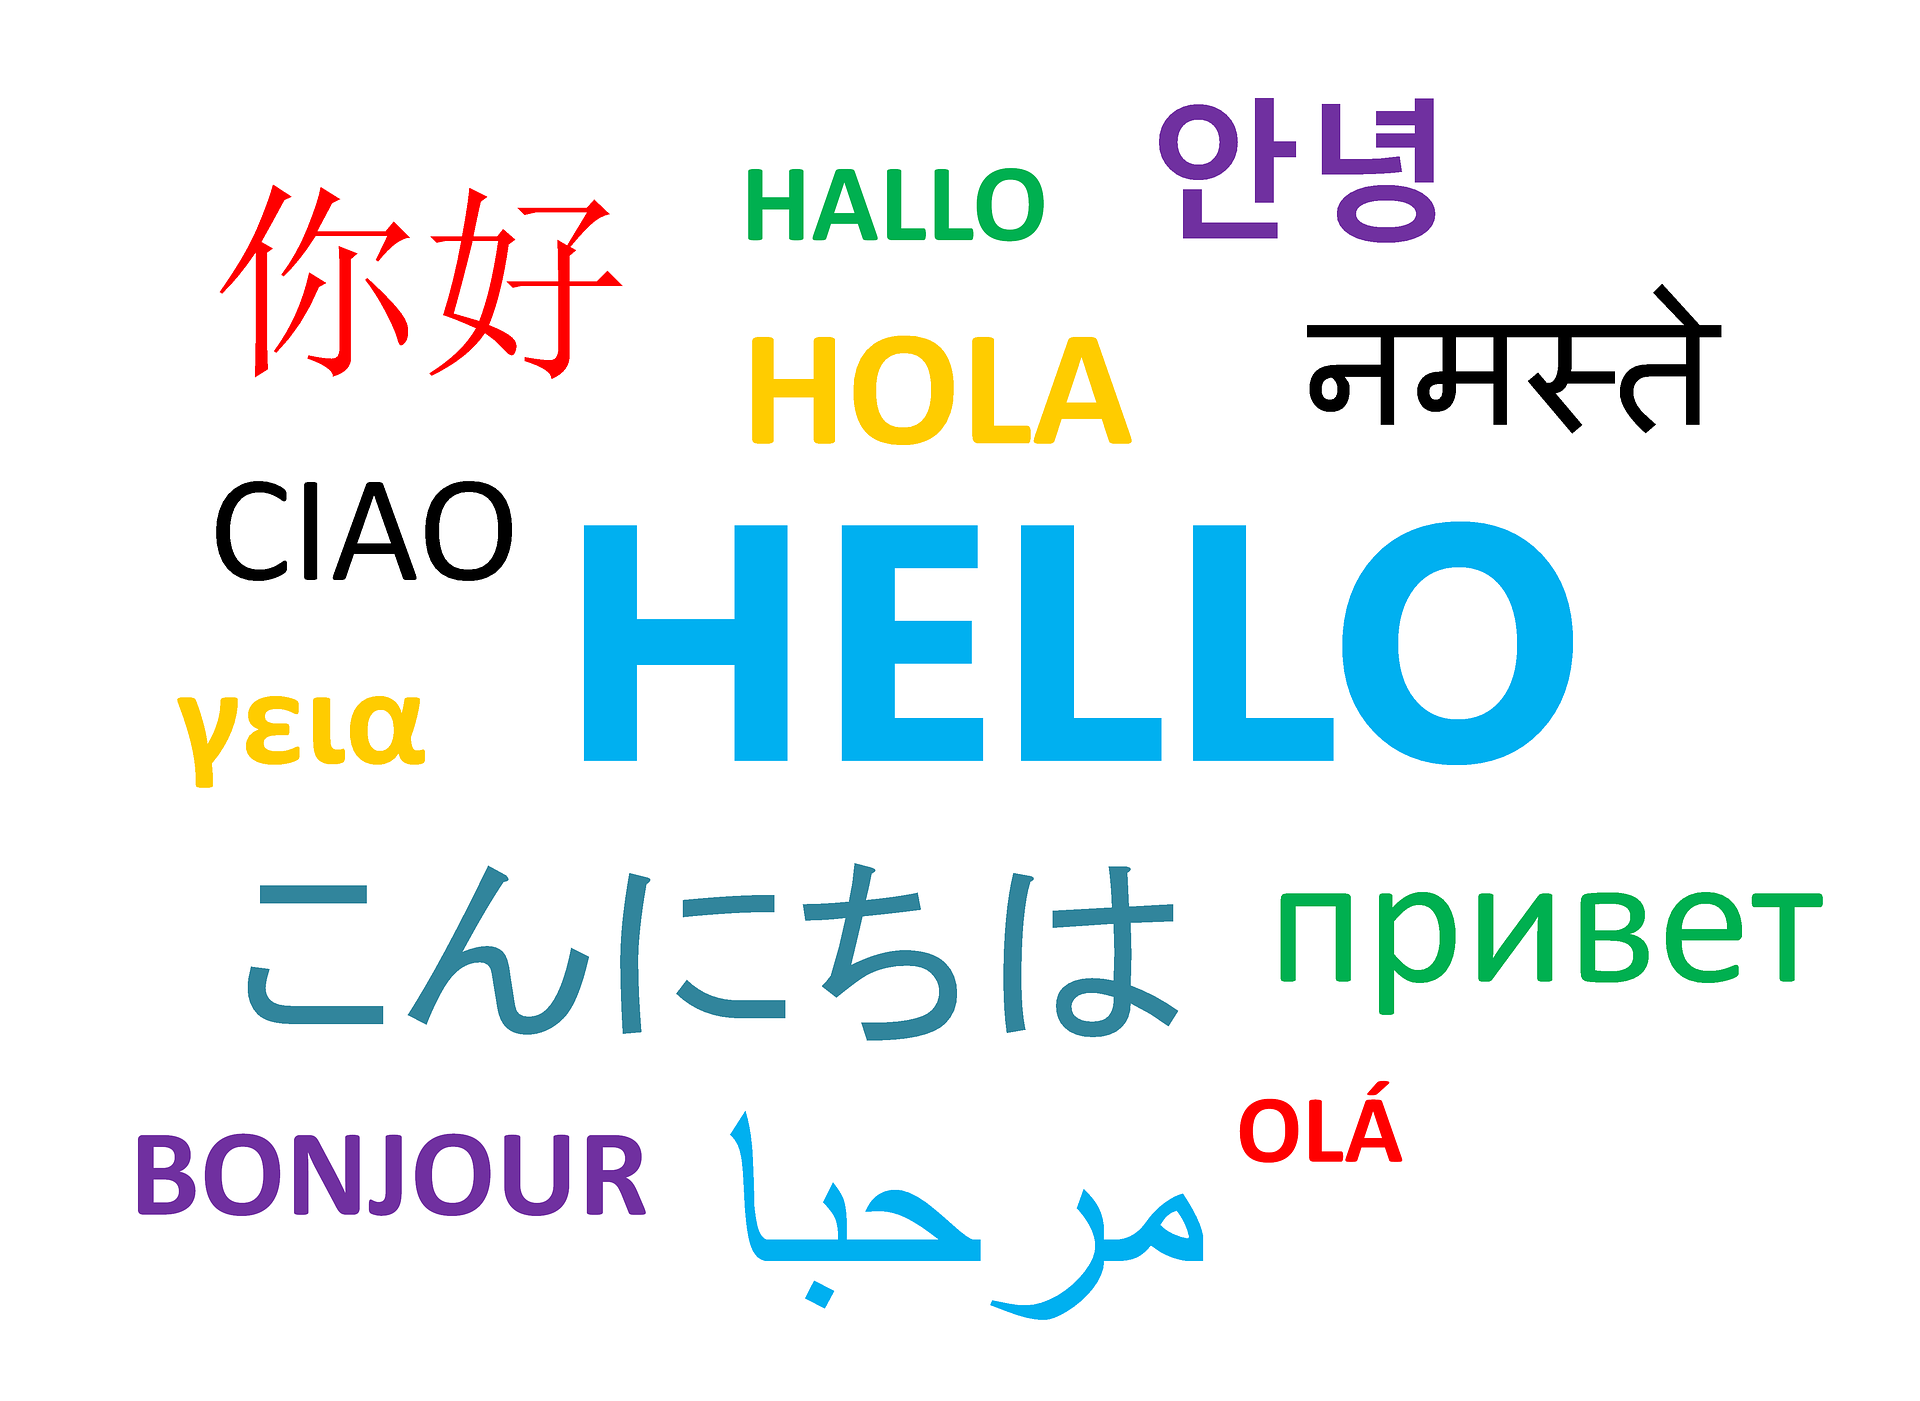 Pourquoi est il important d'apprendre les langues étrangères ?